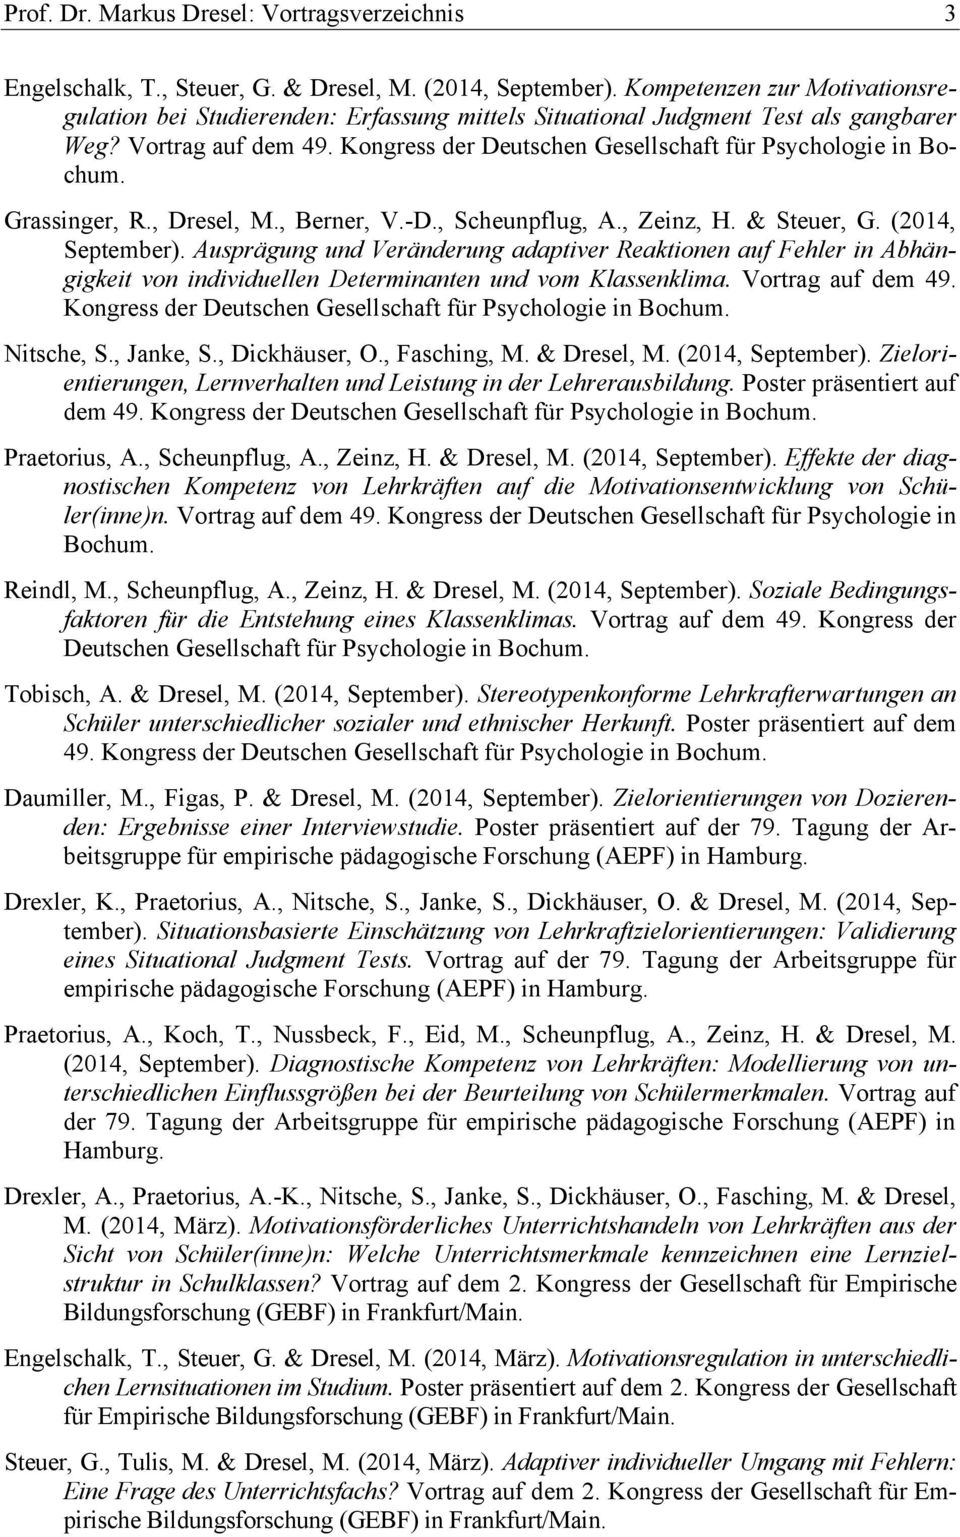 Kongress der Deutschen Gesellschaft für Psychologie in Bochum. Grassinger, R., Dresel, M., Berner, V.-D., Scheunpflug, A., Zeinz, H. & Steuer, G. (2014, September).